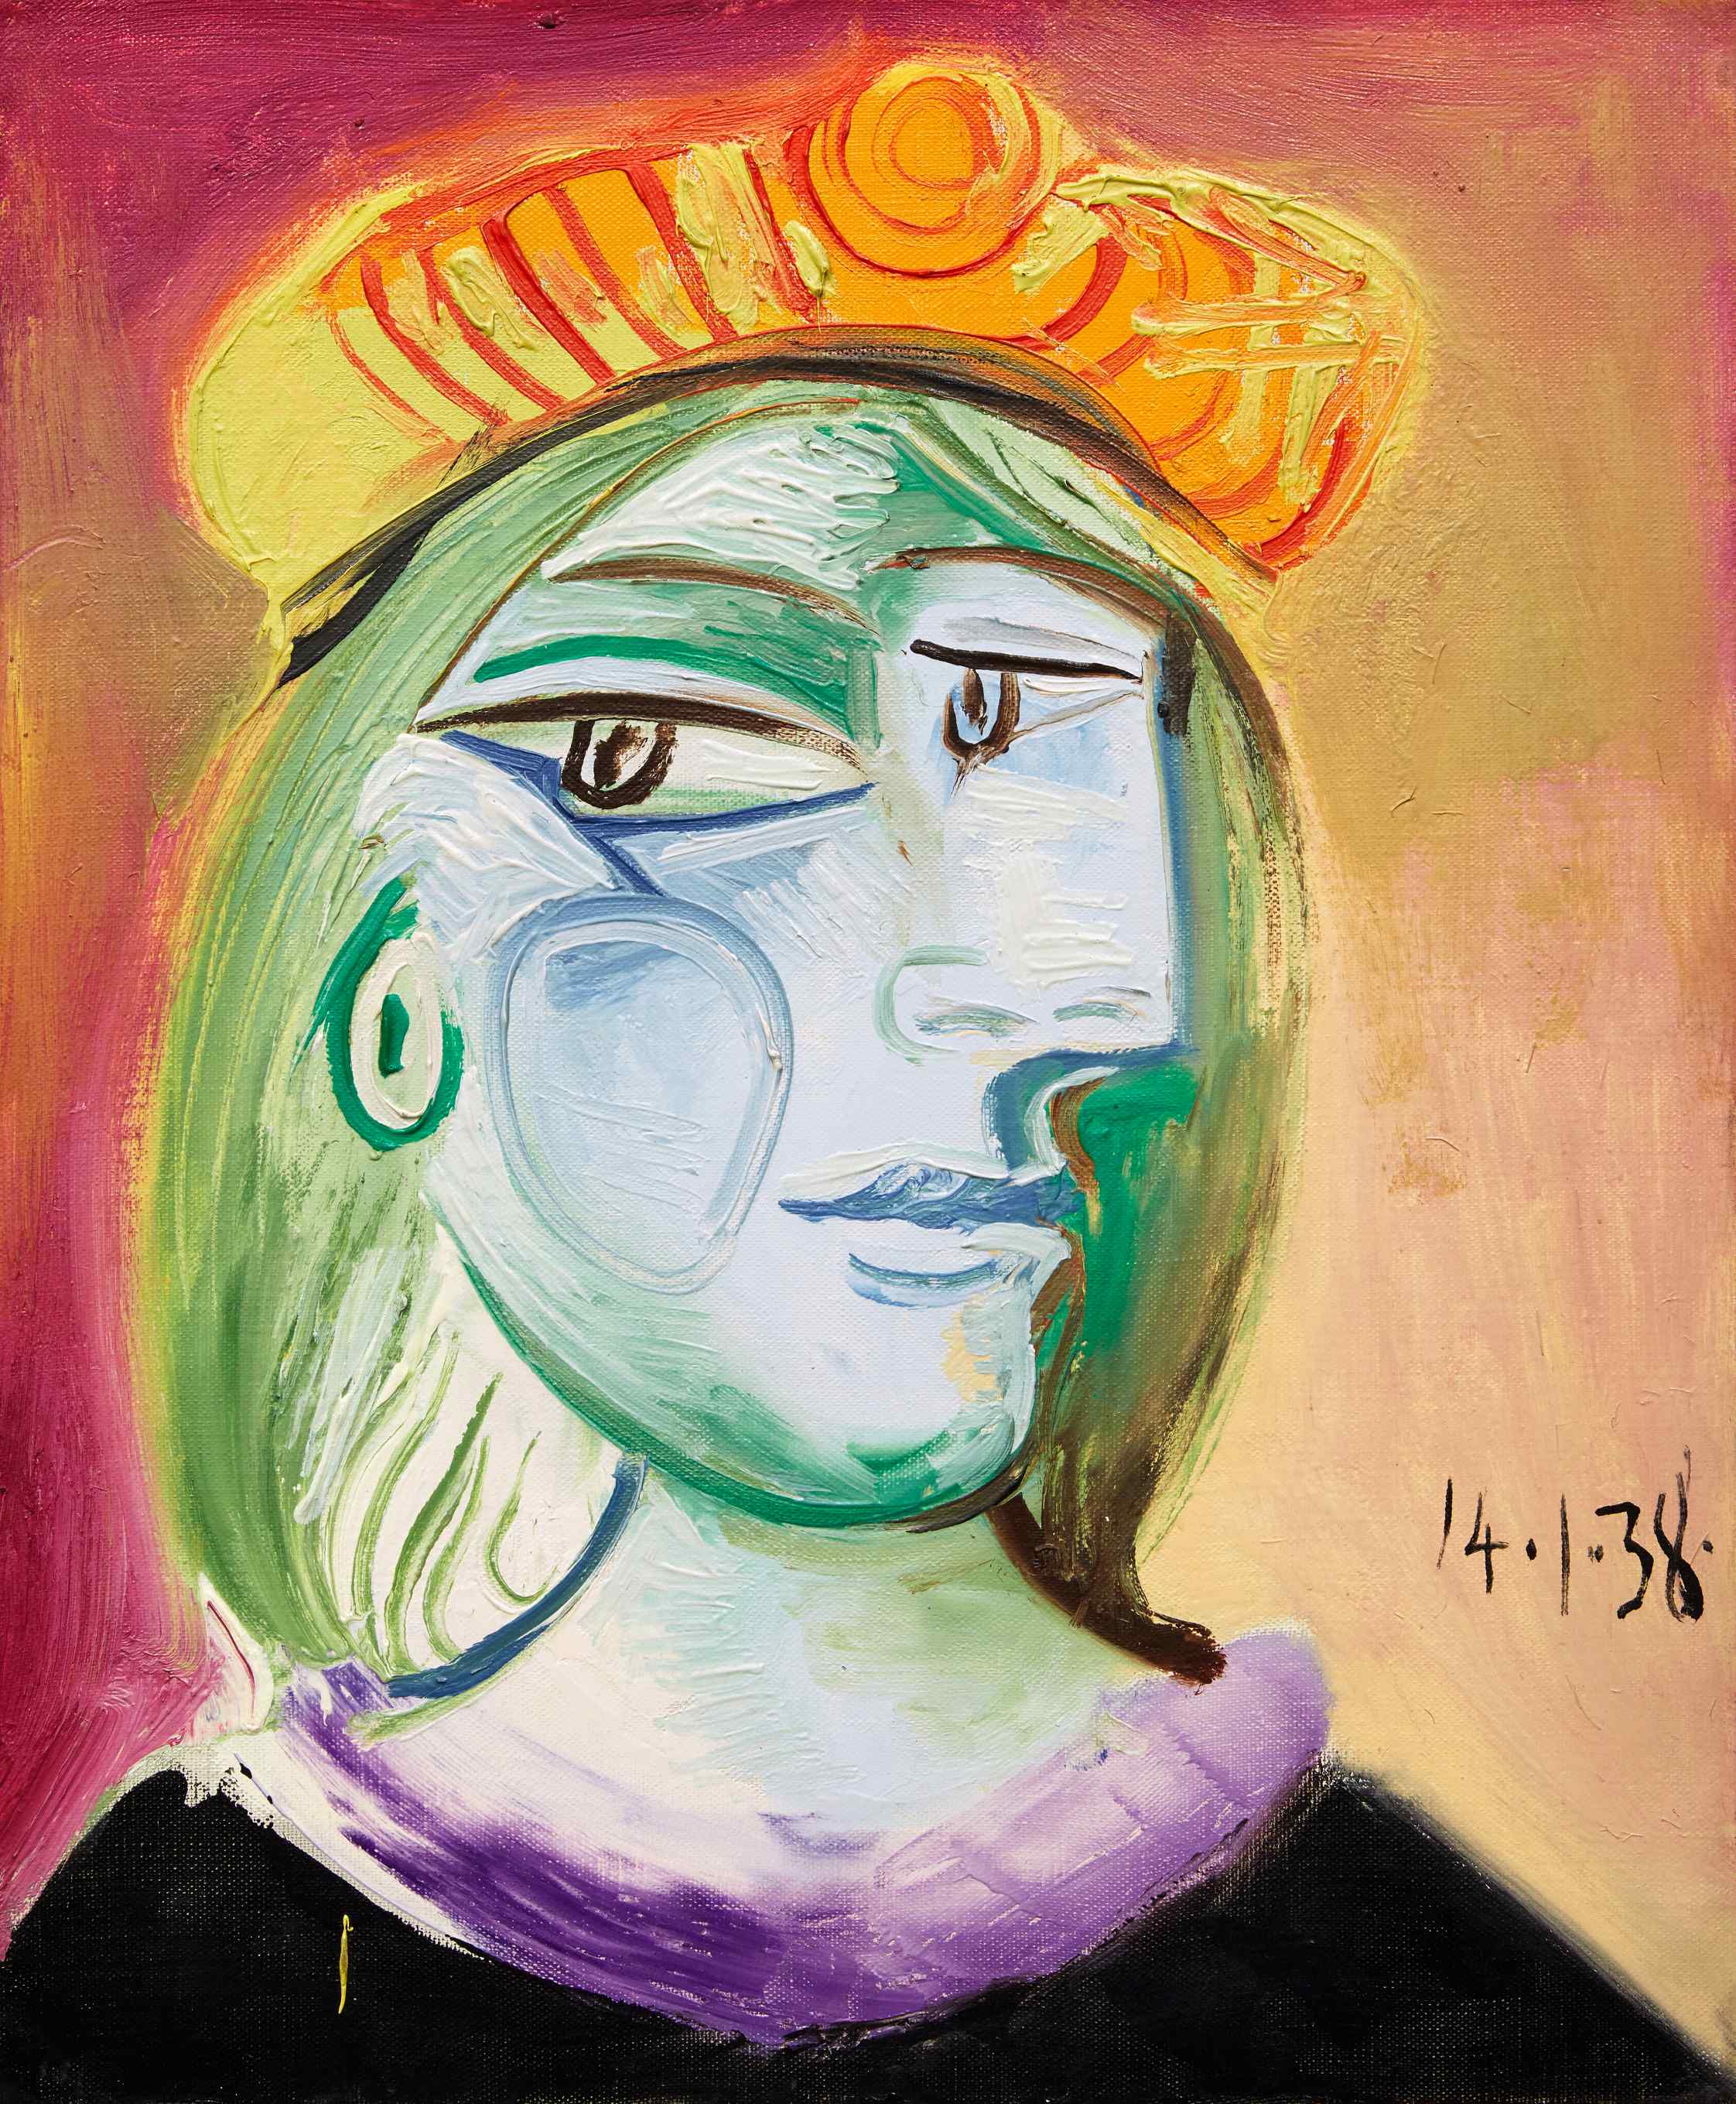 Pablo Picasso's "Femme au beret rouge orange"